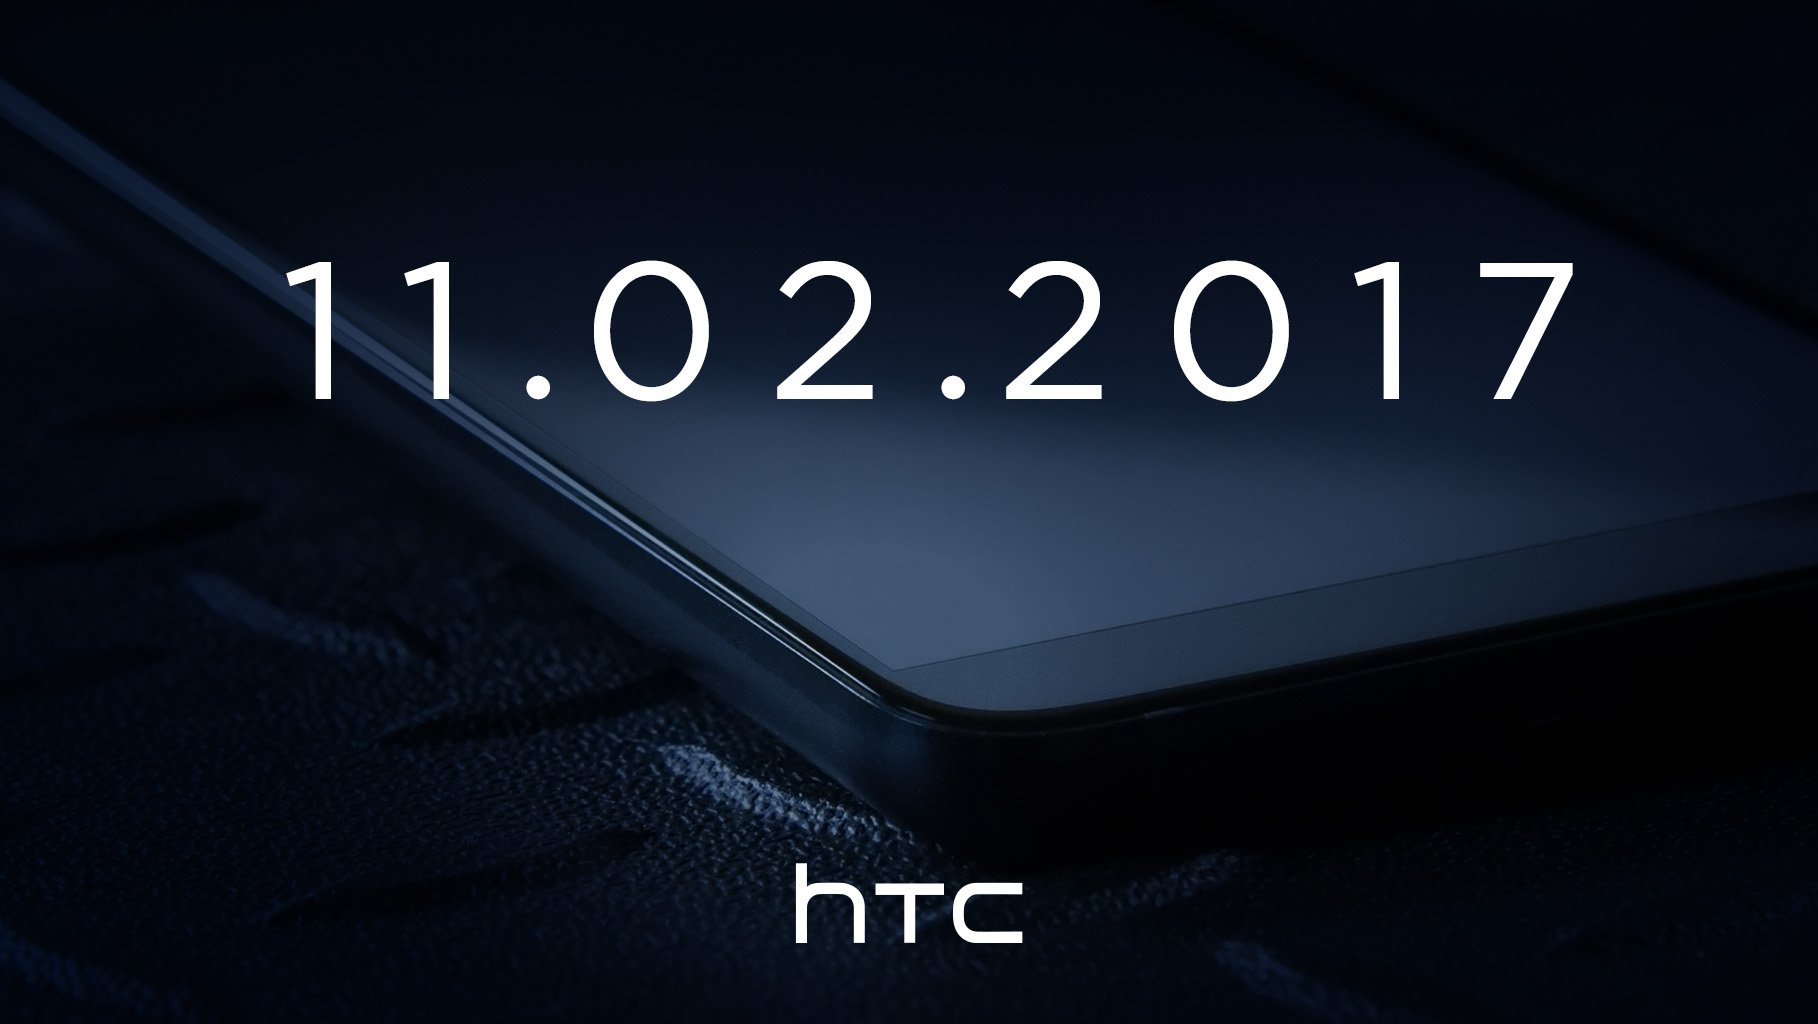 Sự kiện giới thiệu đặc biệt vào ngày 02/11/2017 dành cho cho mẫu smartphone được mong đợi là HTC U11+Sự kiện giới thiệu đặc biệt vào ngày 02/11/2017 dành cho cho mẫu smartphone được mong đợi là HTC U11+